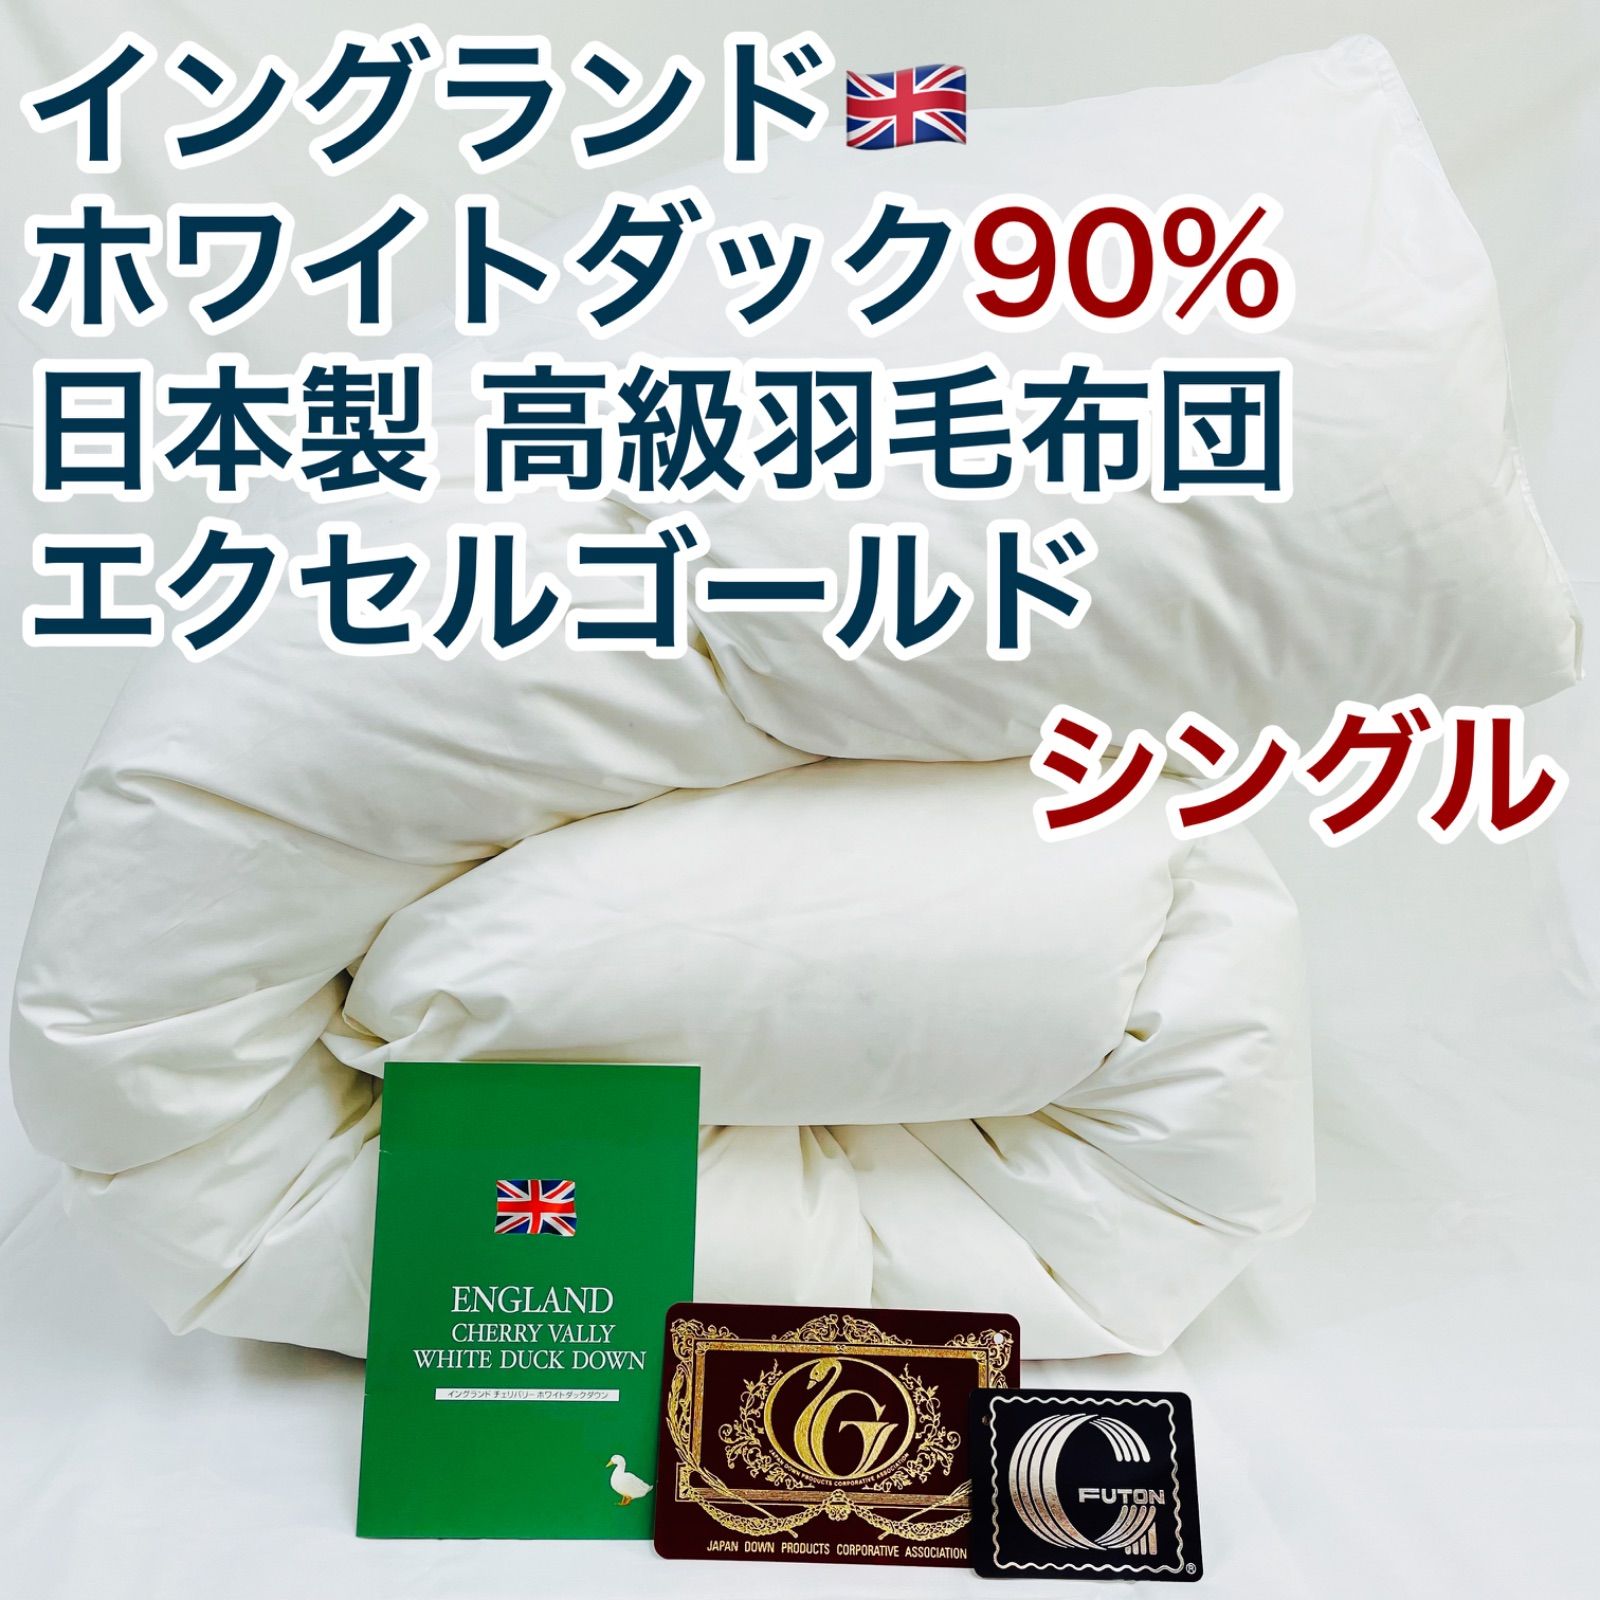 羽毛布団 シングル イングランド産ホワイトダック90% 日本製 エクセル